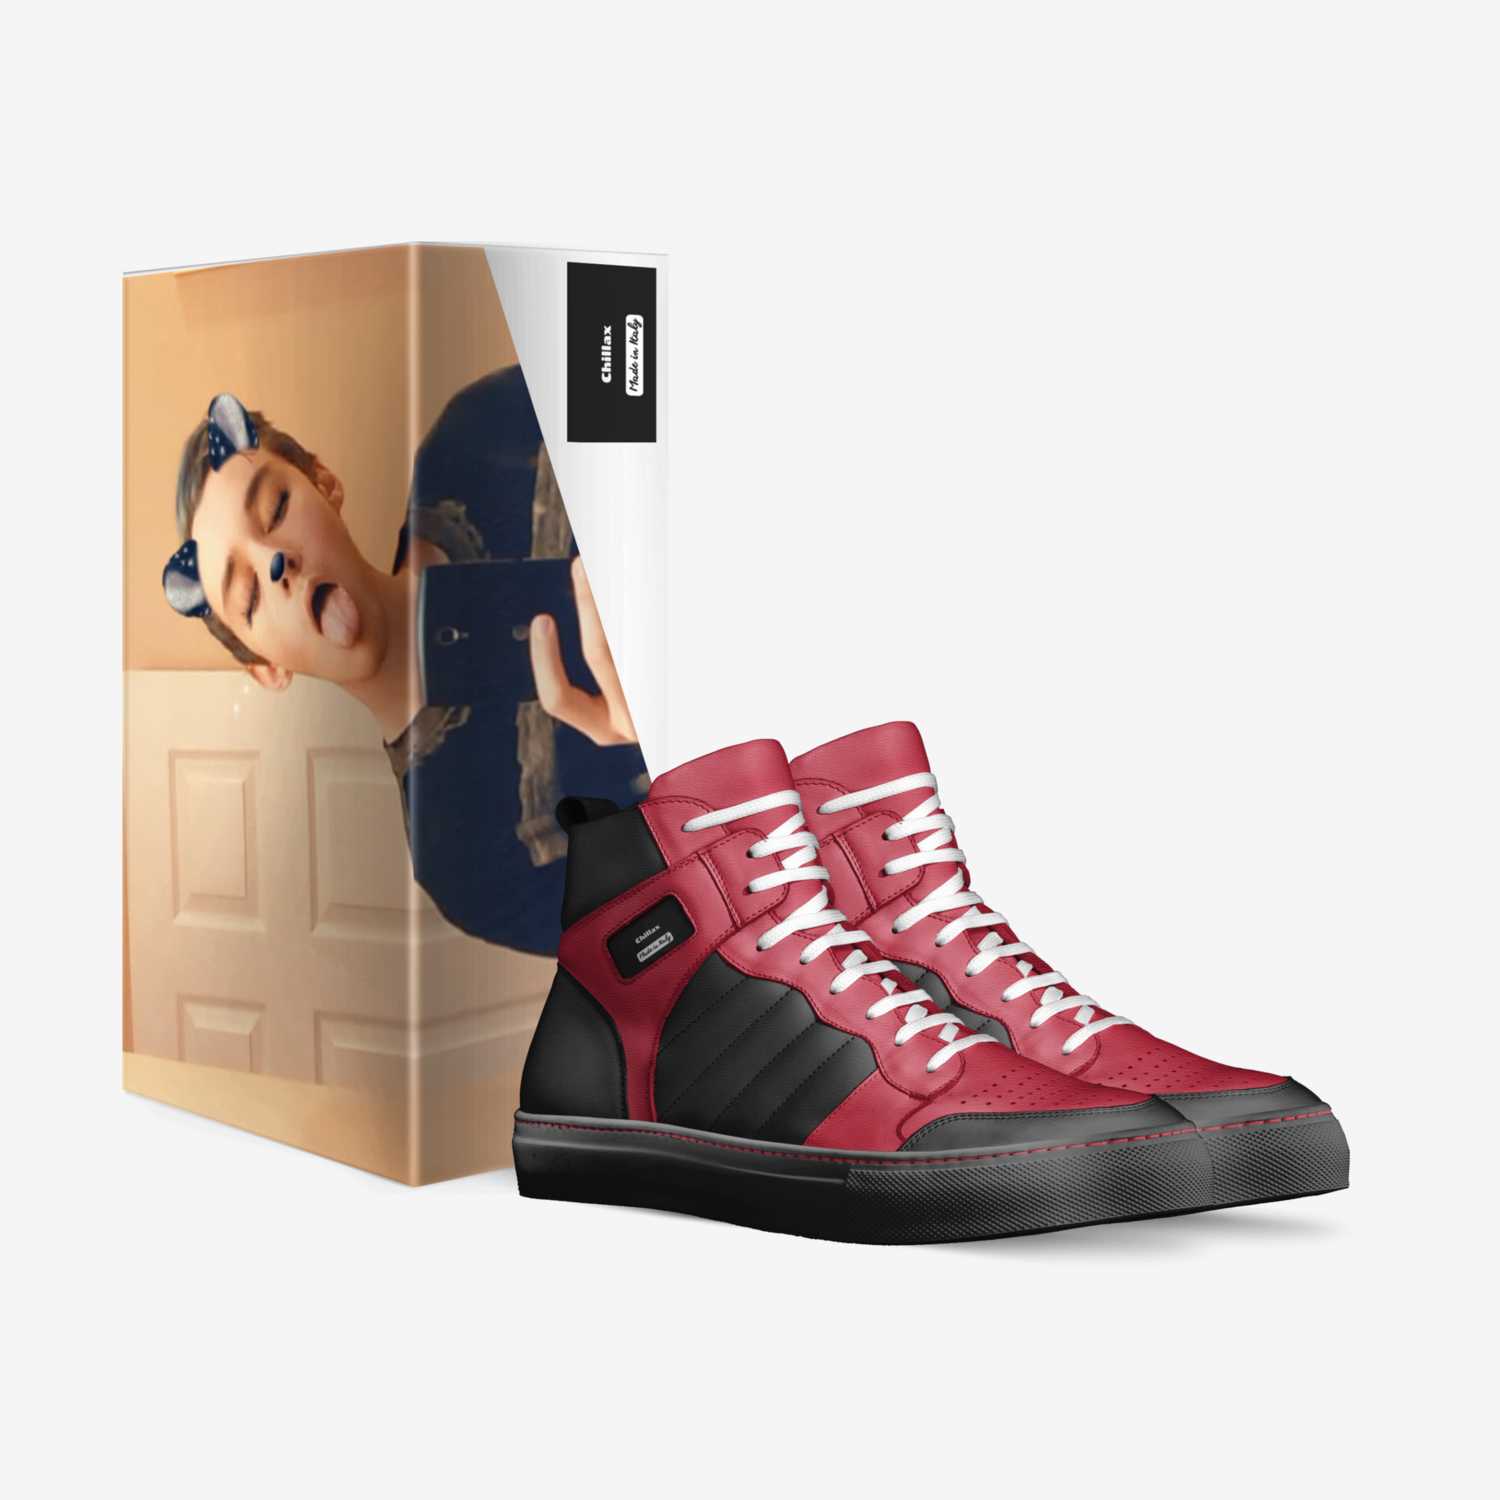 Zackalackin custom made in Italy shoes by Zack Leonardi | Box view